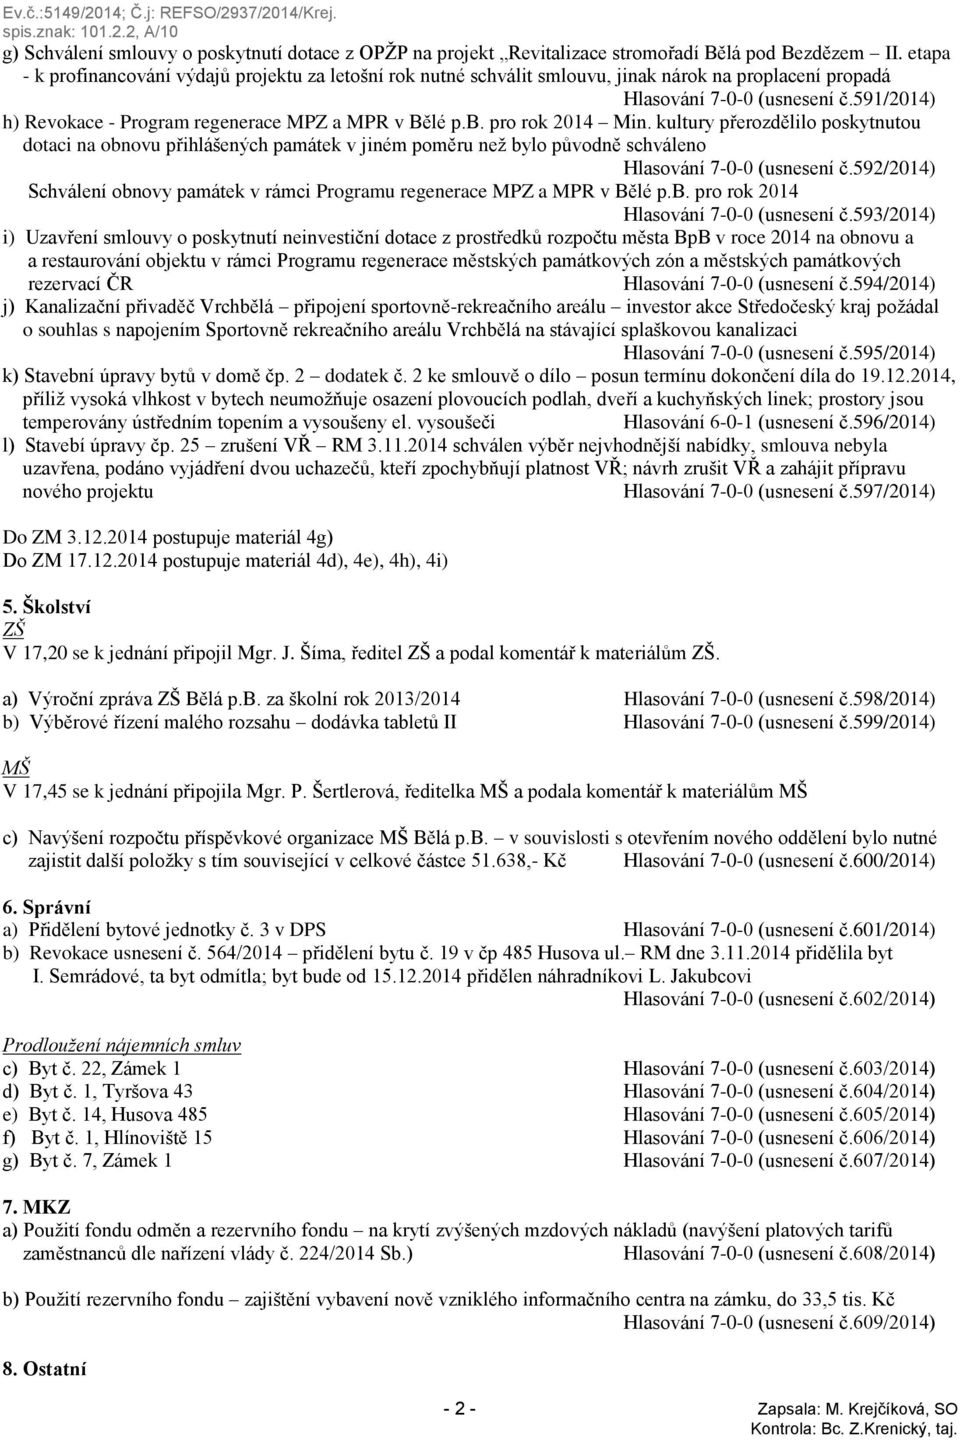 591/2014) h) Revokace - Program regenerace MPZ a MPR v Bělé p.b. pro rok 2014 Min.